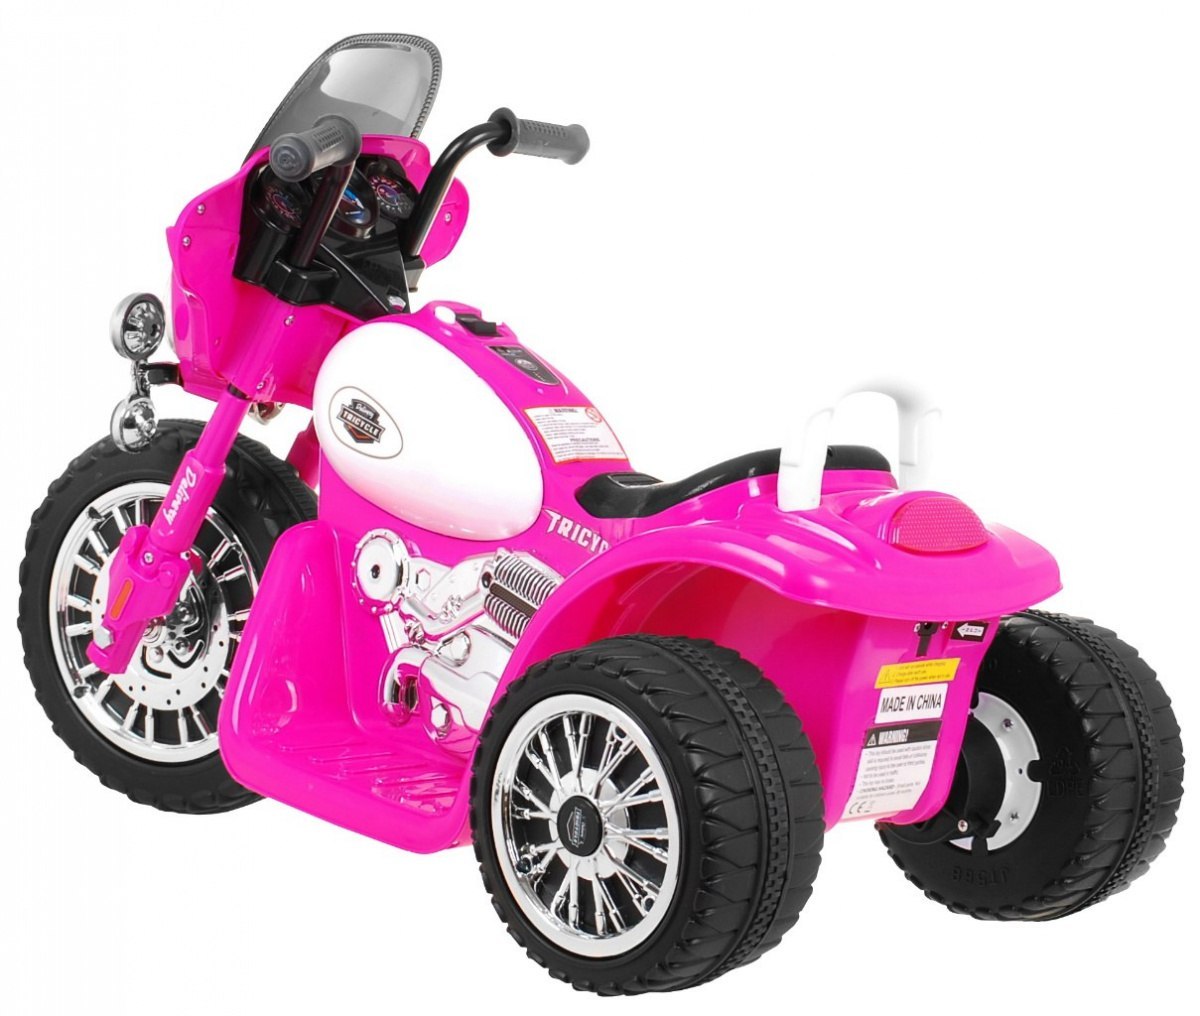 Motorek Chopper na akumulator dla dzieci Różowy + 3 koła + Dźwięki + Światła LED